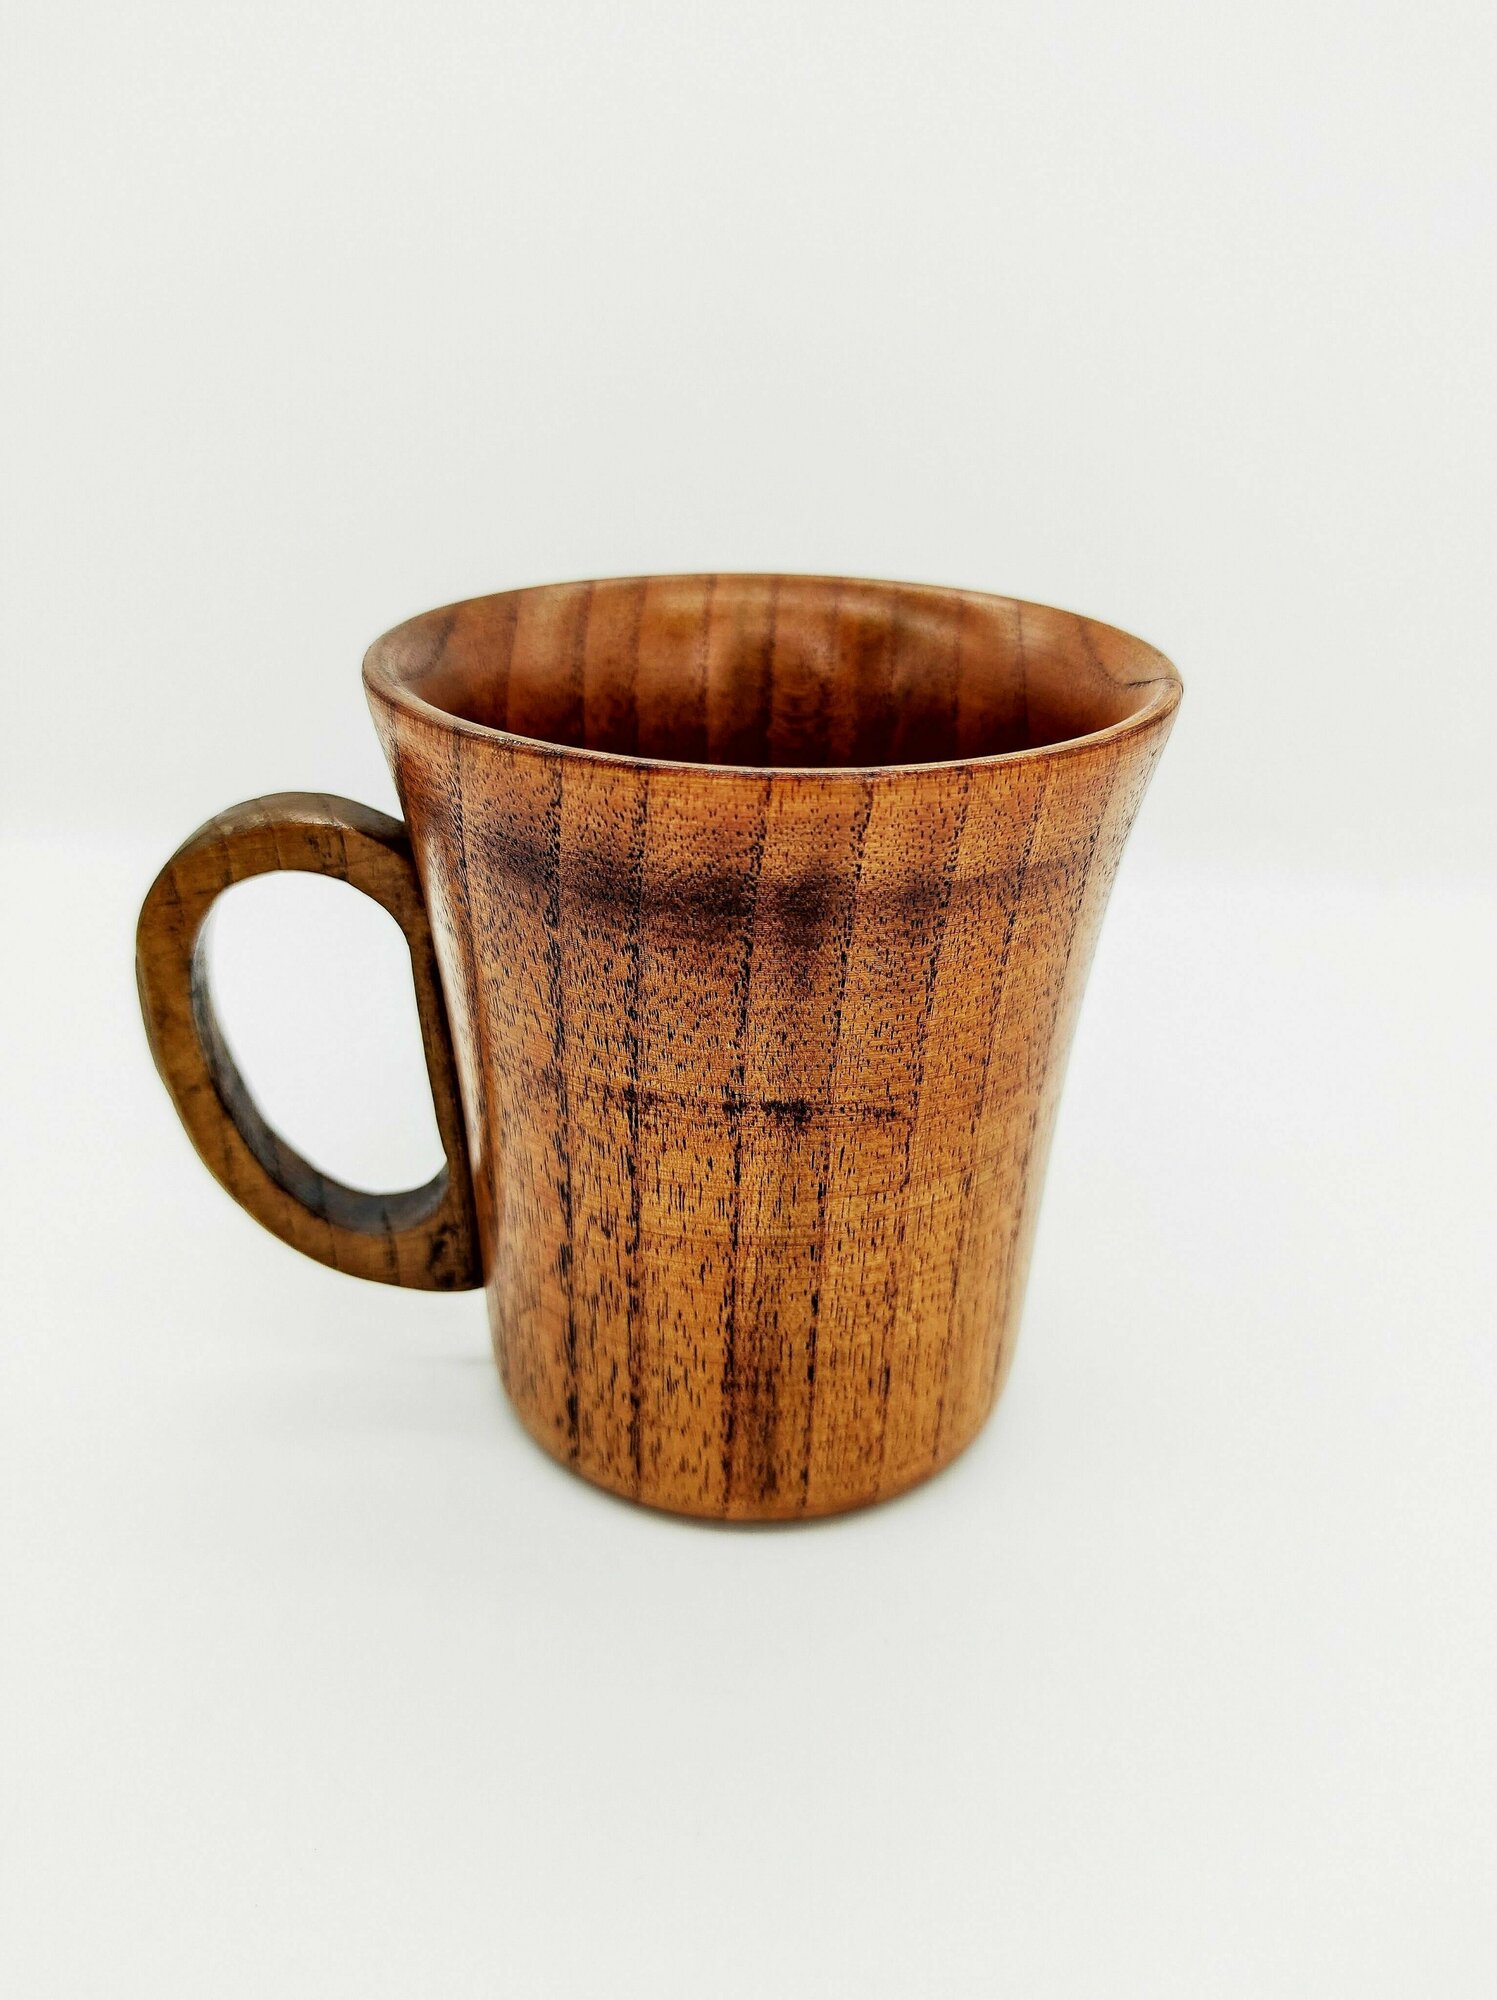 Кружка деревянная для чая/ Чашка деревянная/Деревянная посуда/ Пиала для чая деревянная для дома, офиса, бани/ Чайная серия